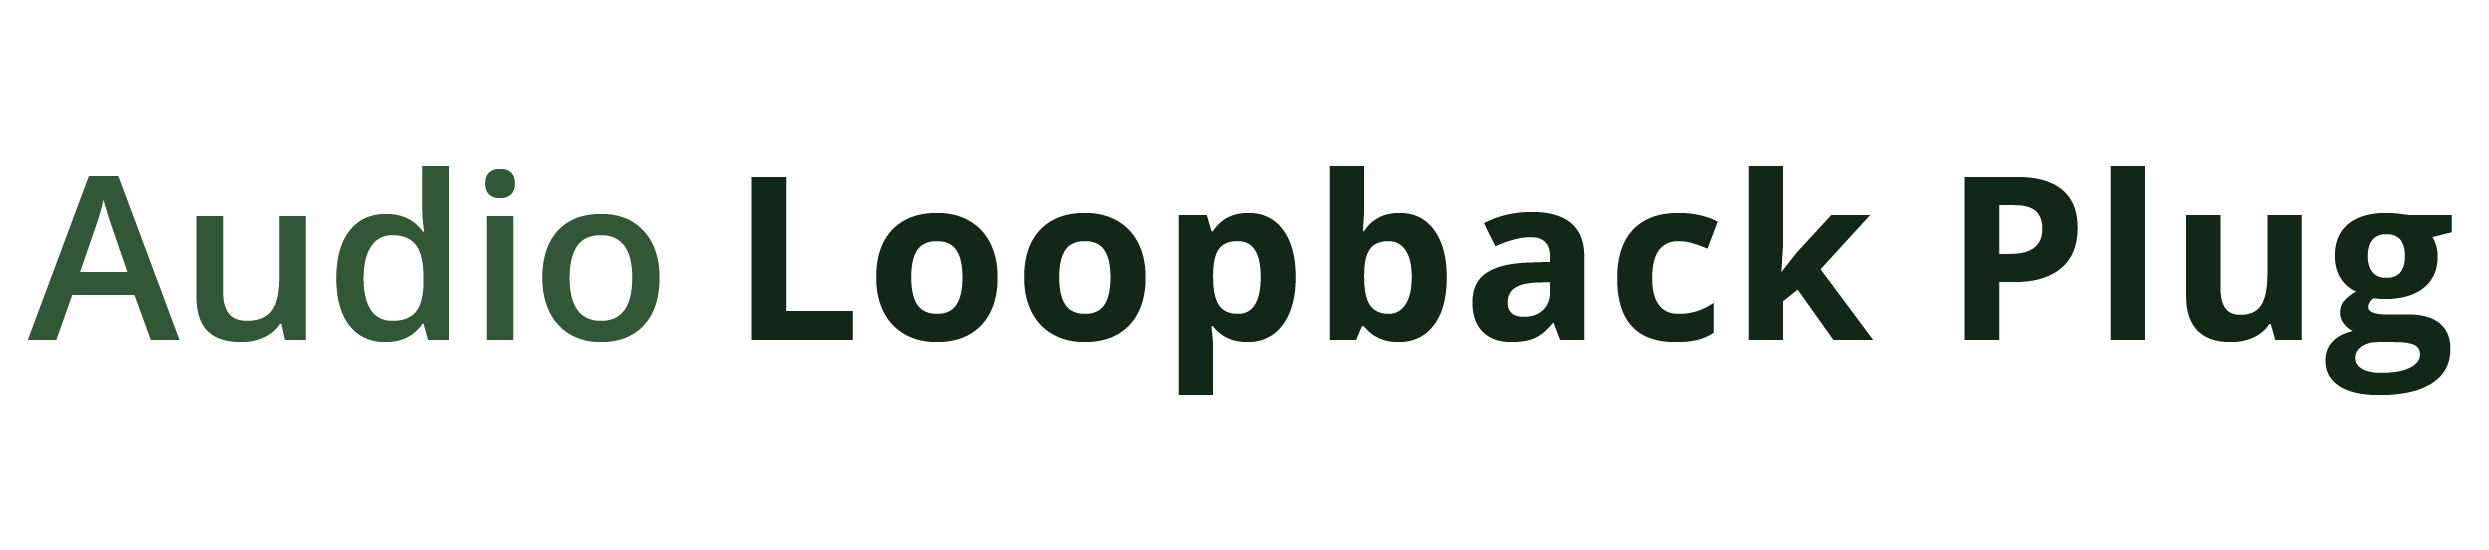 loopback software